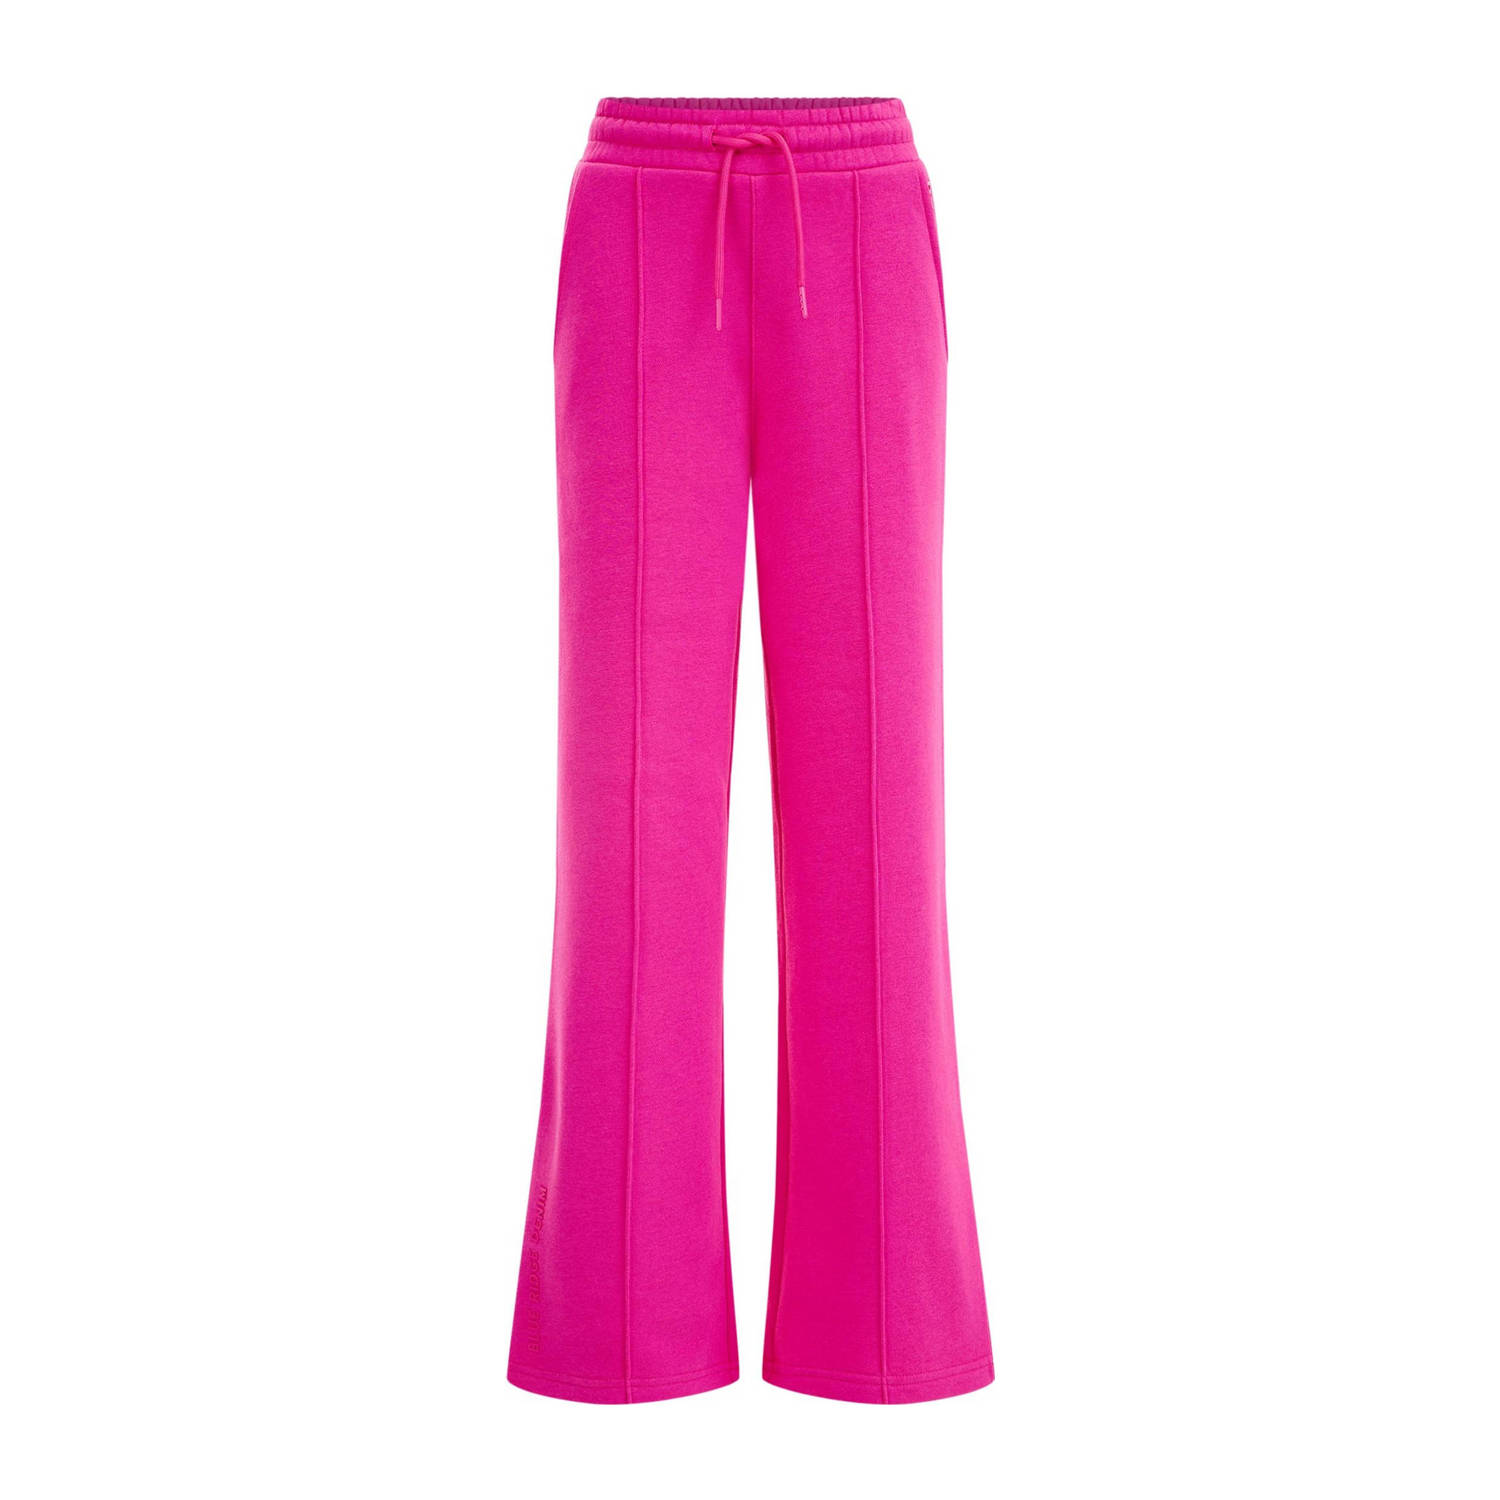 WE Fashion Blue Ridge straight fit broek roze Meisjes Sweat Effen 110